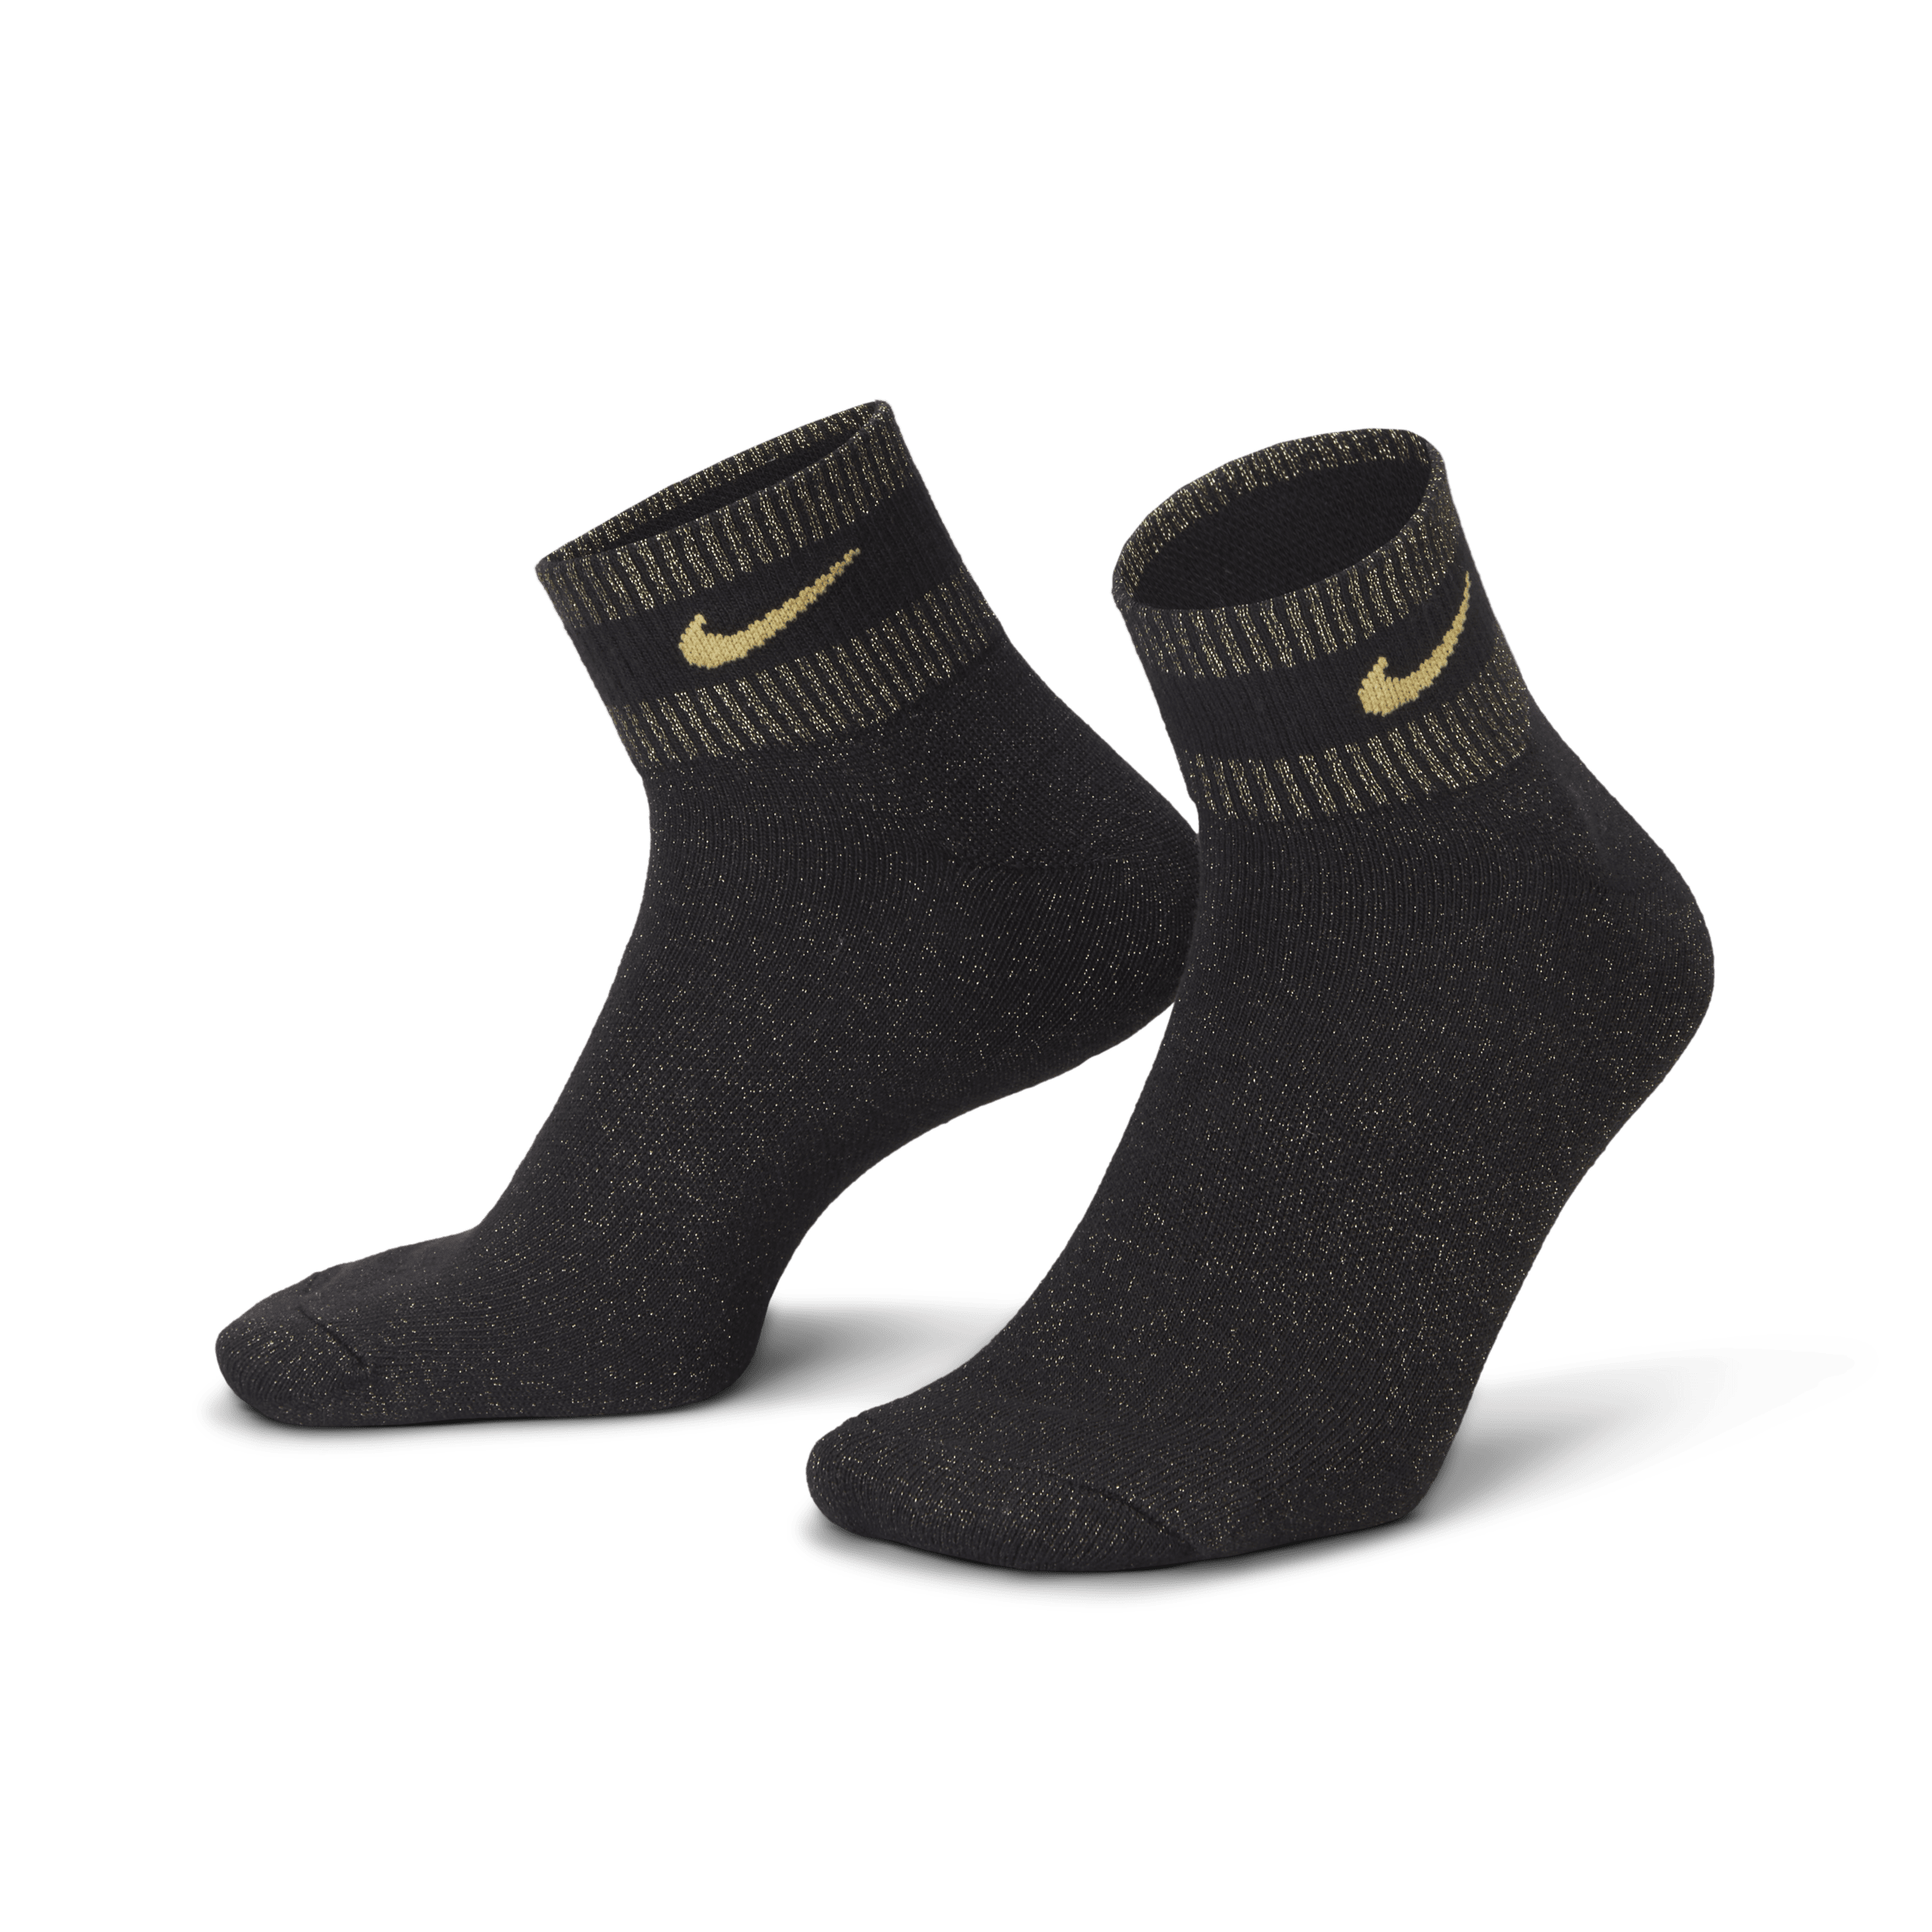 Calze alla caviglia con dettagli metallizzati Nike Everyday Essentials (1 paio) - Nero